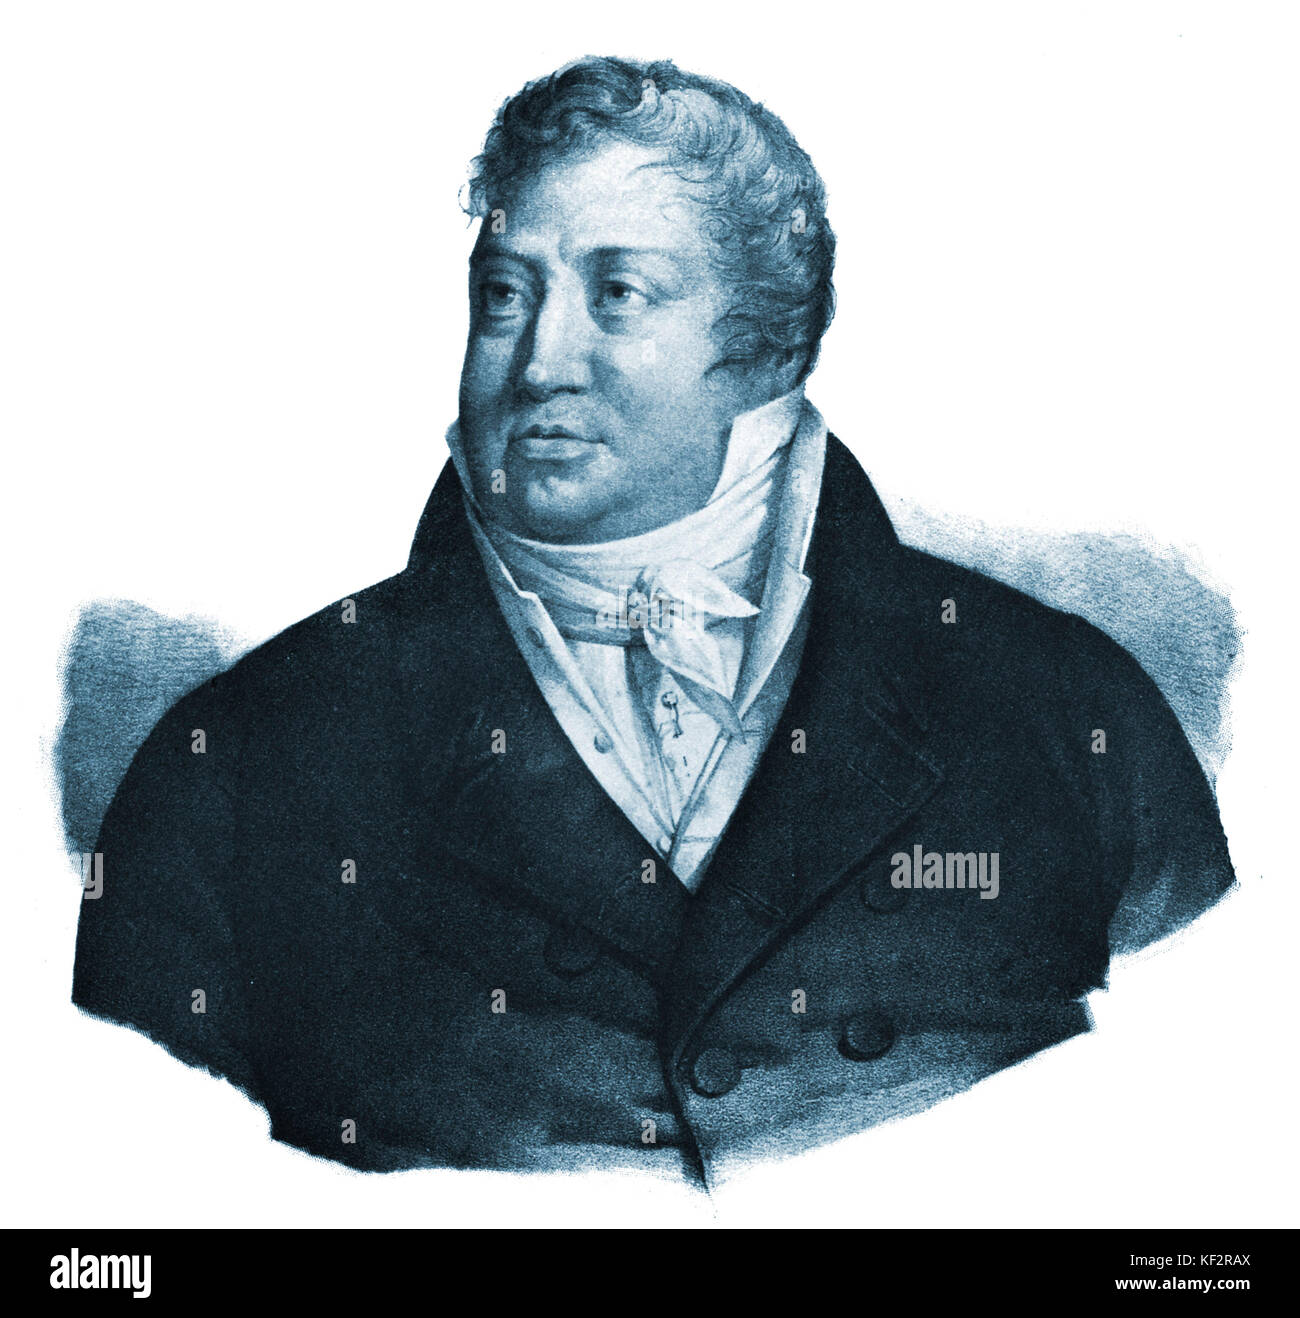 DUSSEK, Jan Ladislav. El compositor bohemio, 1760-1812 Foto de stock